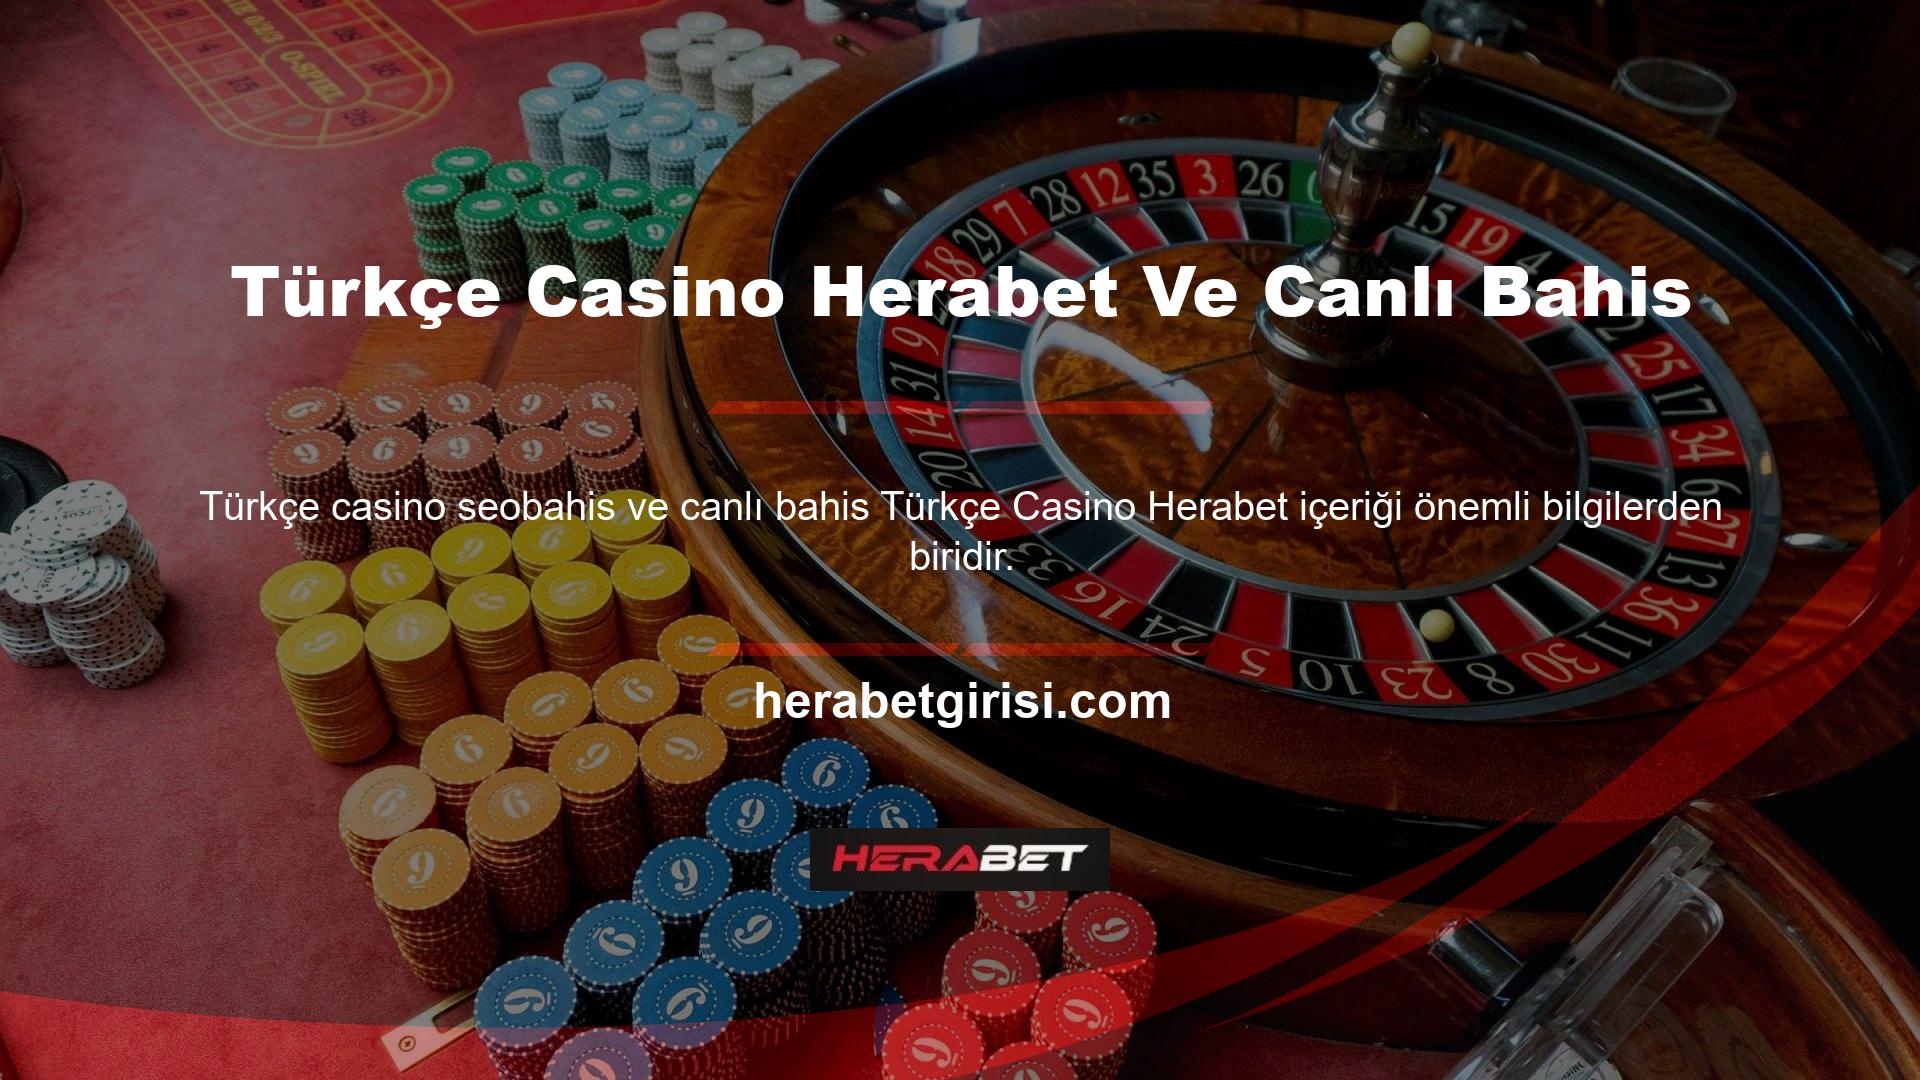 Bir Türk katip ile rulet ve blackjack gibi masa oyunları oynayabilirsiniz